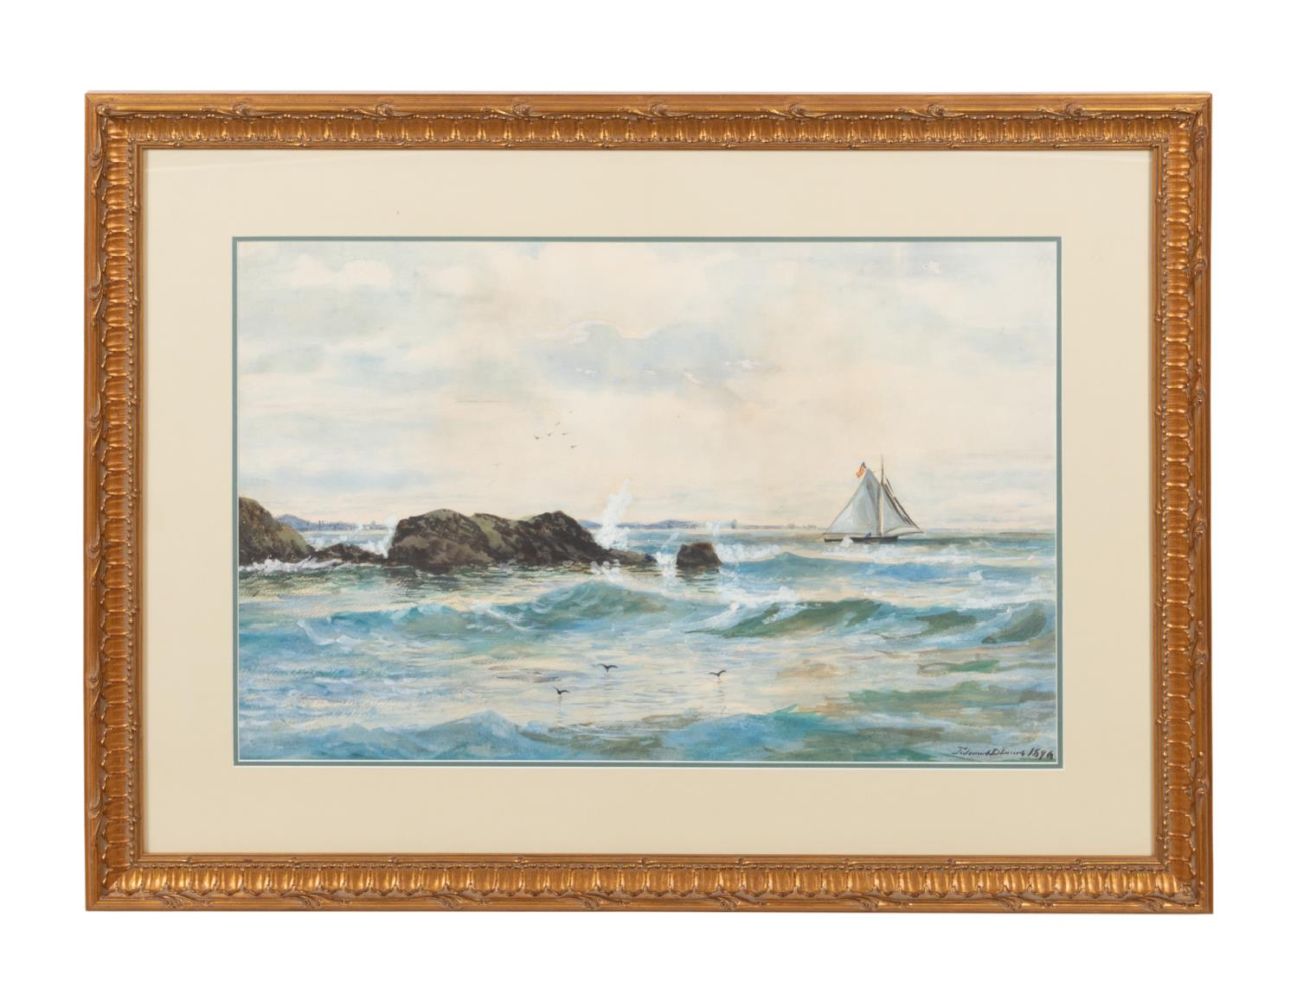 EDMUND DARCH LEWIS 'SEASCAPE' 1896